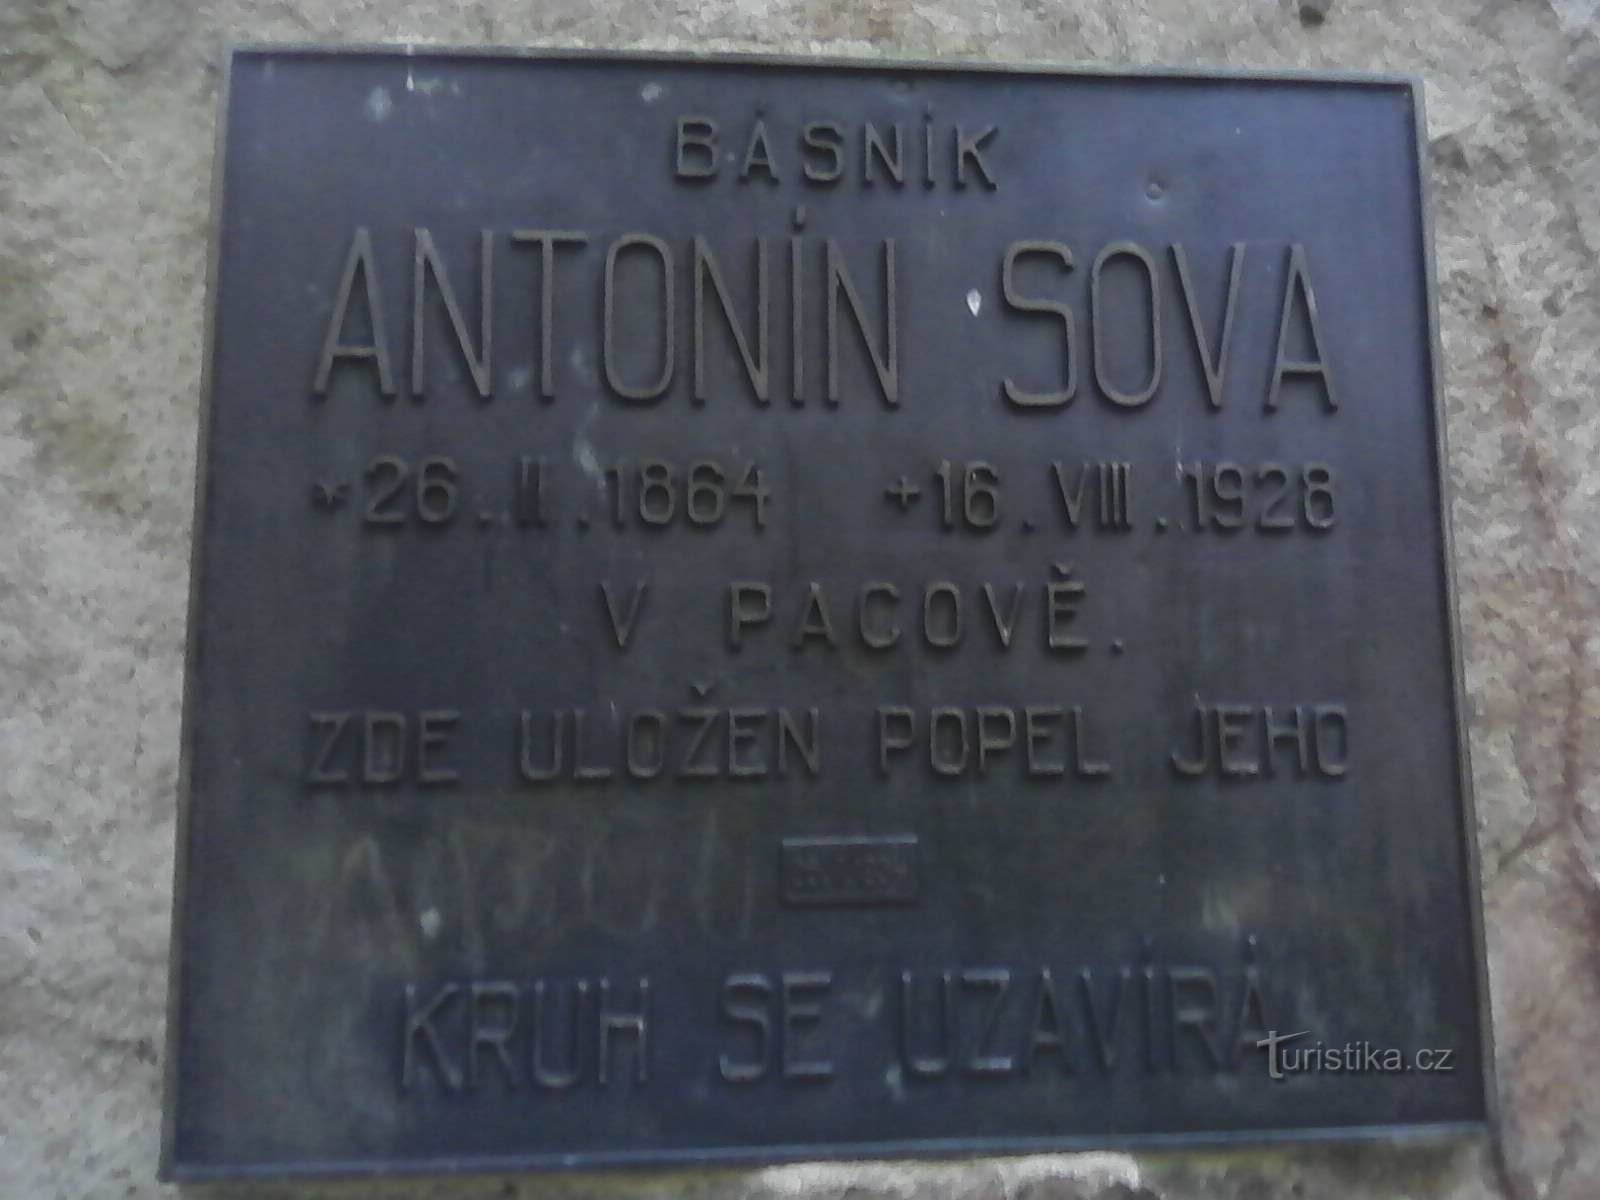 2. Placa conmemorativa del monumento al poeta de 1934.